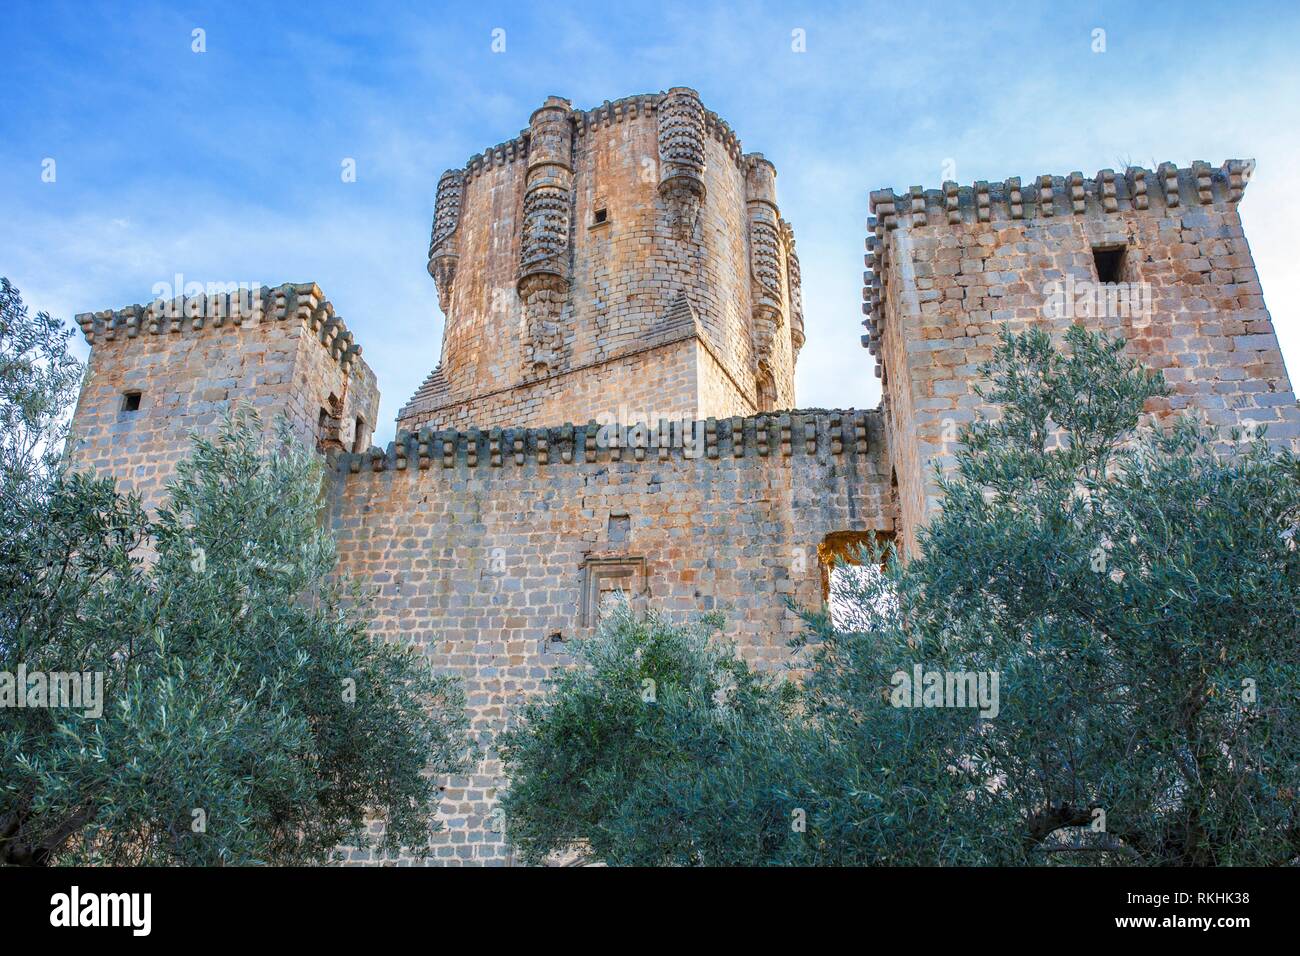 Impresionante Castillo de Belalcázar entre olivo, mantener con la mayor torre de la Península Ibérica, Córdoba, España. Foto de stock